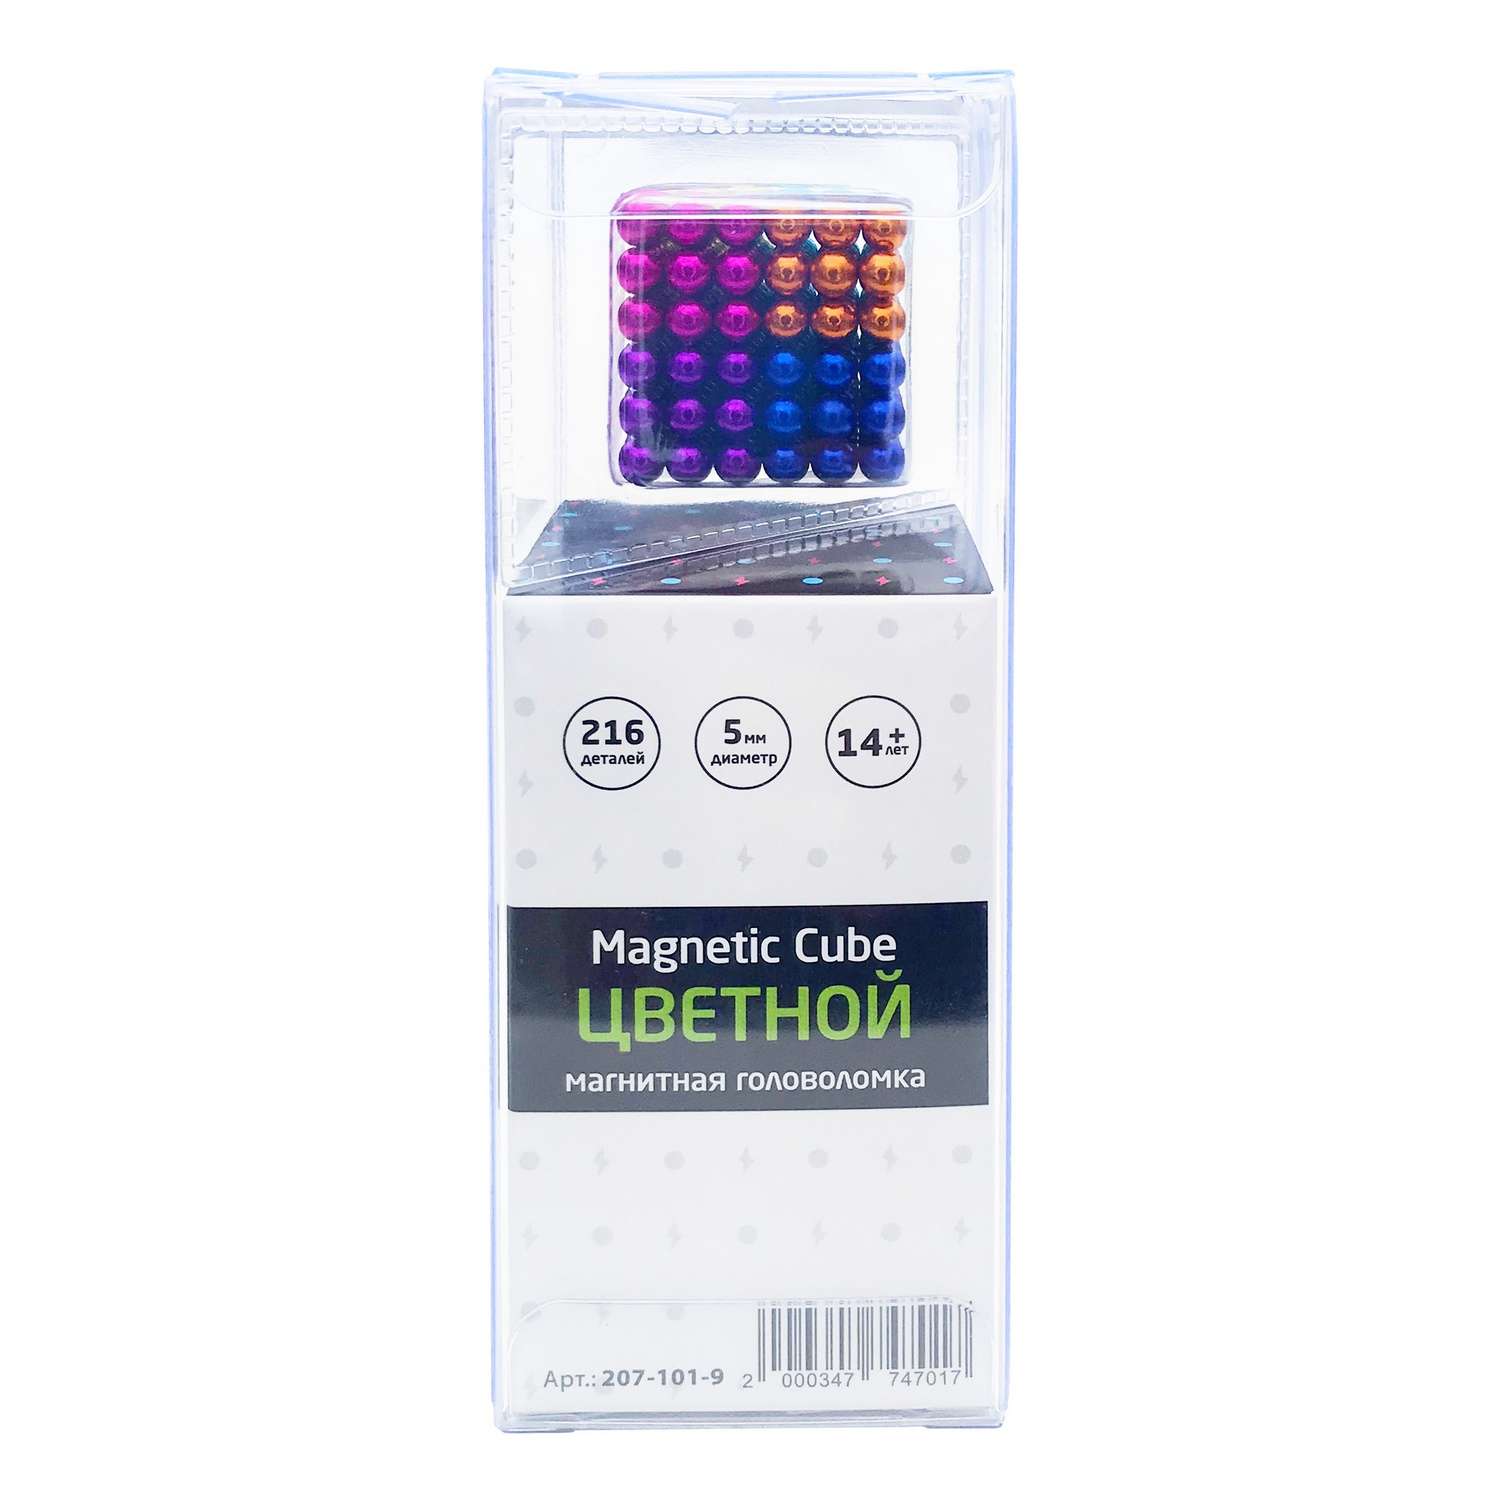 Головоломка магнитная Magnetic Cube Цветной неокуб 216 элементов - фото 5